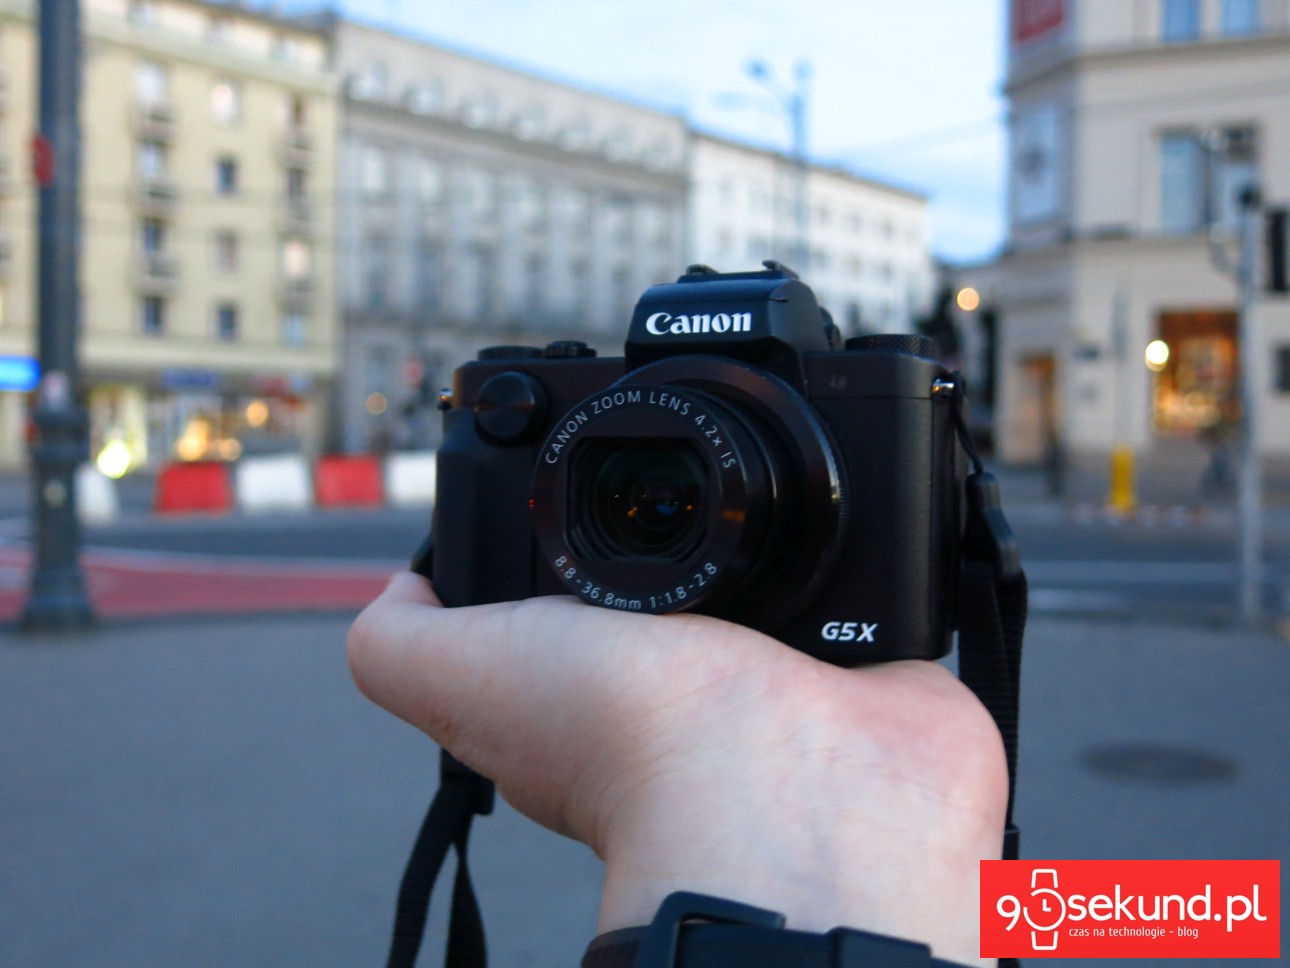 Я чувствую, что нам нужно подружиться, но пусть Canon PowerShot G5 X проявит инициативу в первую очередь